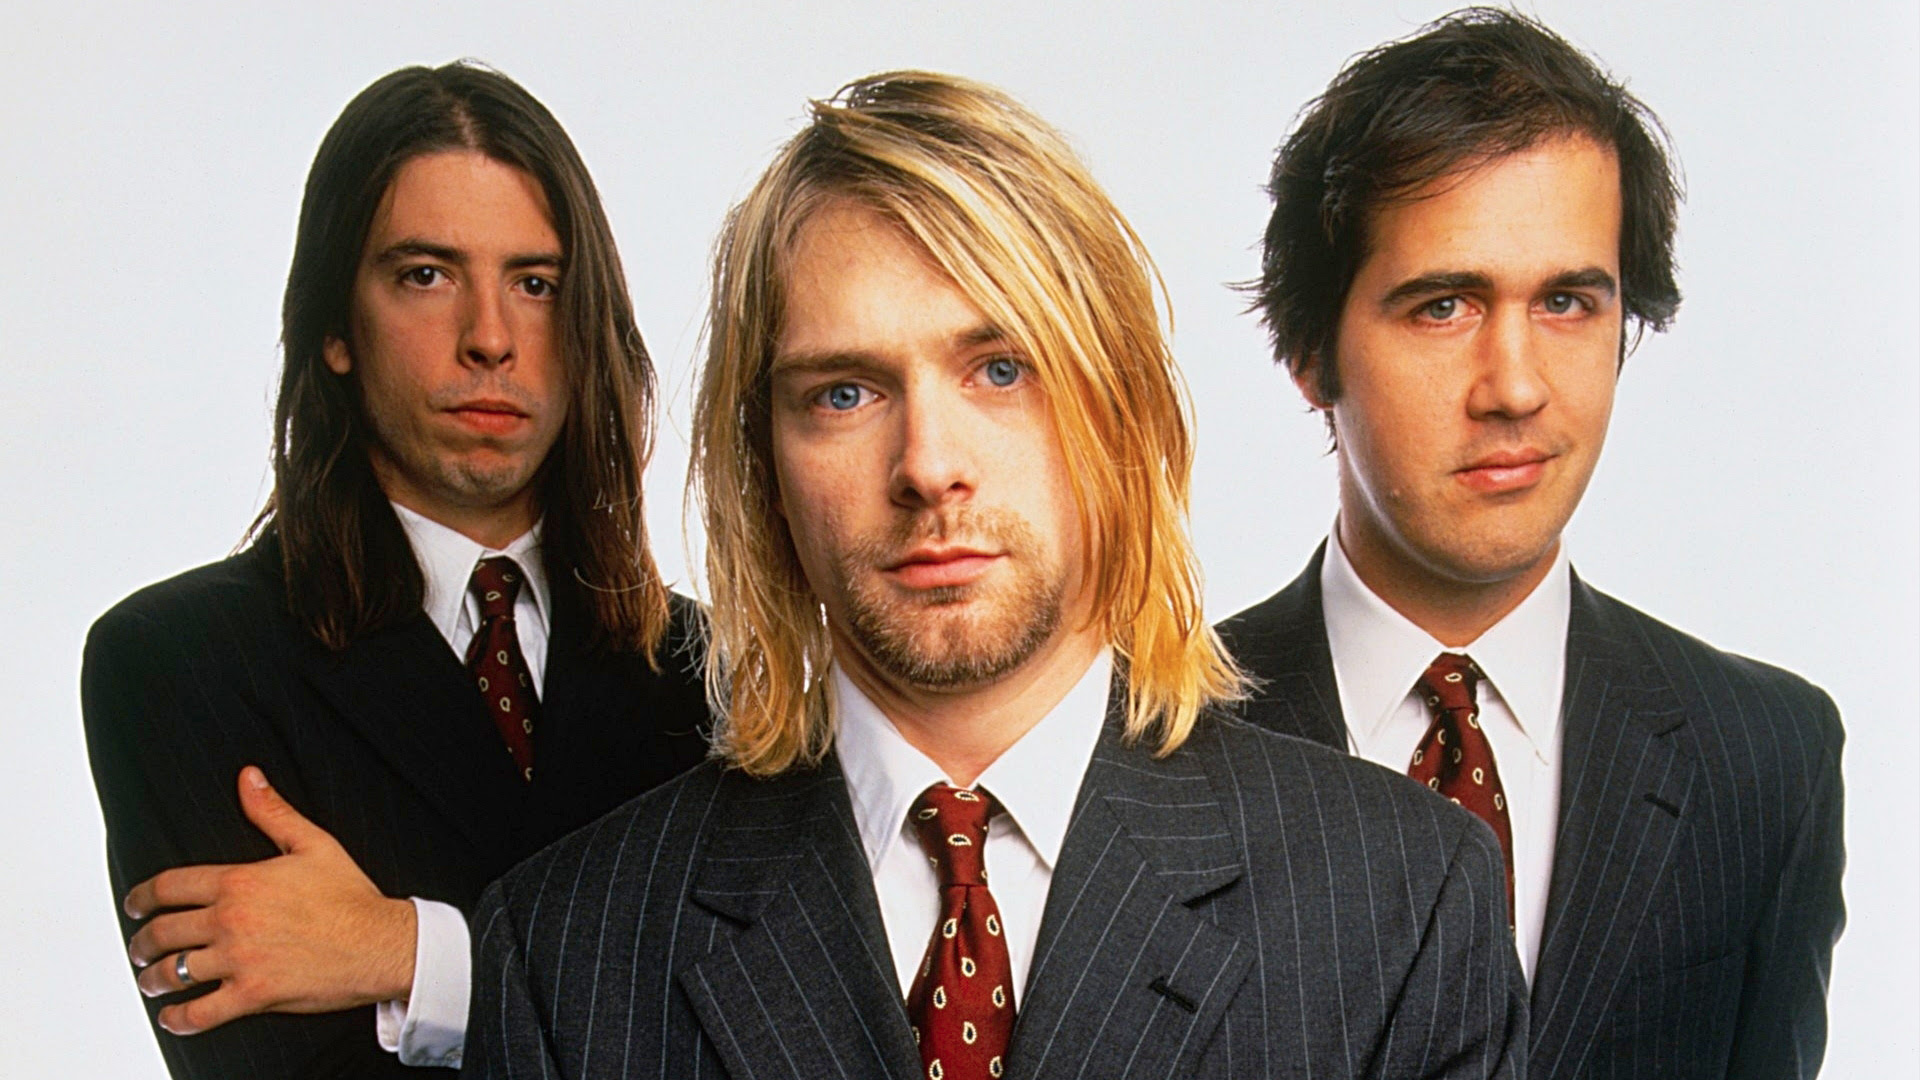 美国油渍摇滚乐队Nirvana(涅槃乐队)1989-2019年发行专辑、现场辑、单曲合集[无损FLAC/19.80GB]百度云盘打包下载 影音资源 第3张